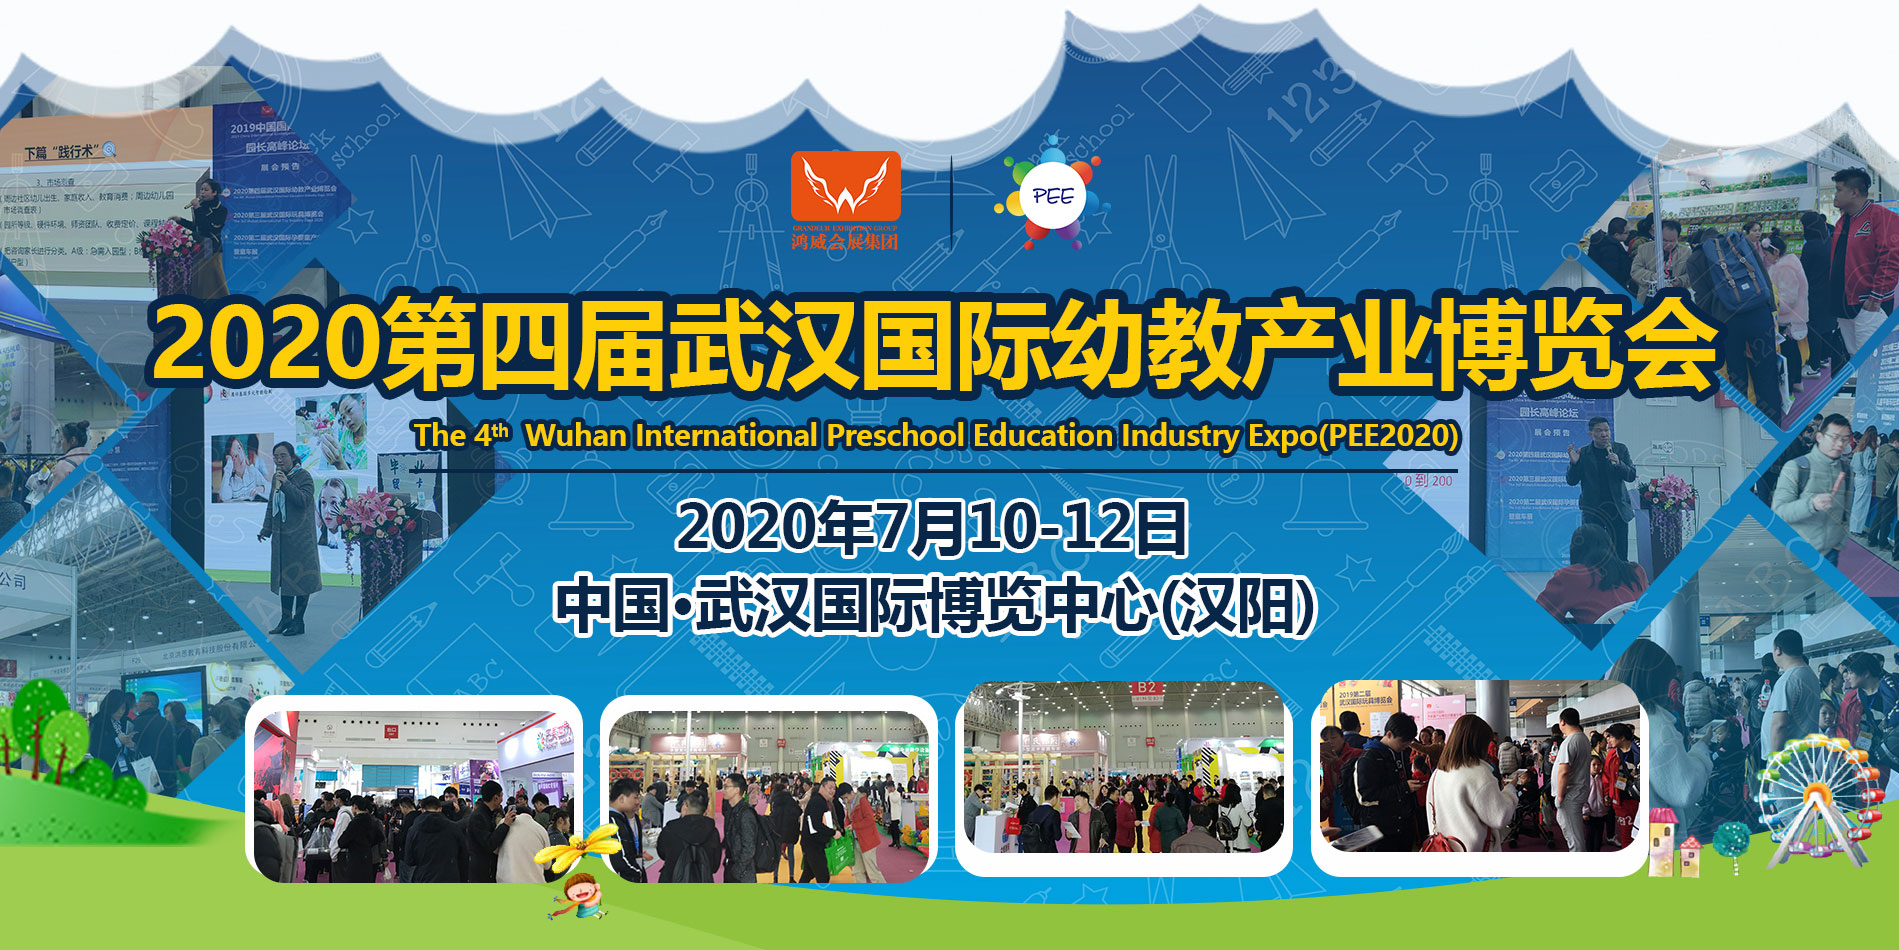 2020*四届武汉国际幼教产业博览会